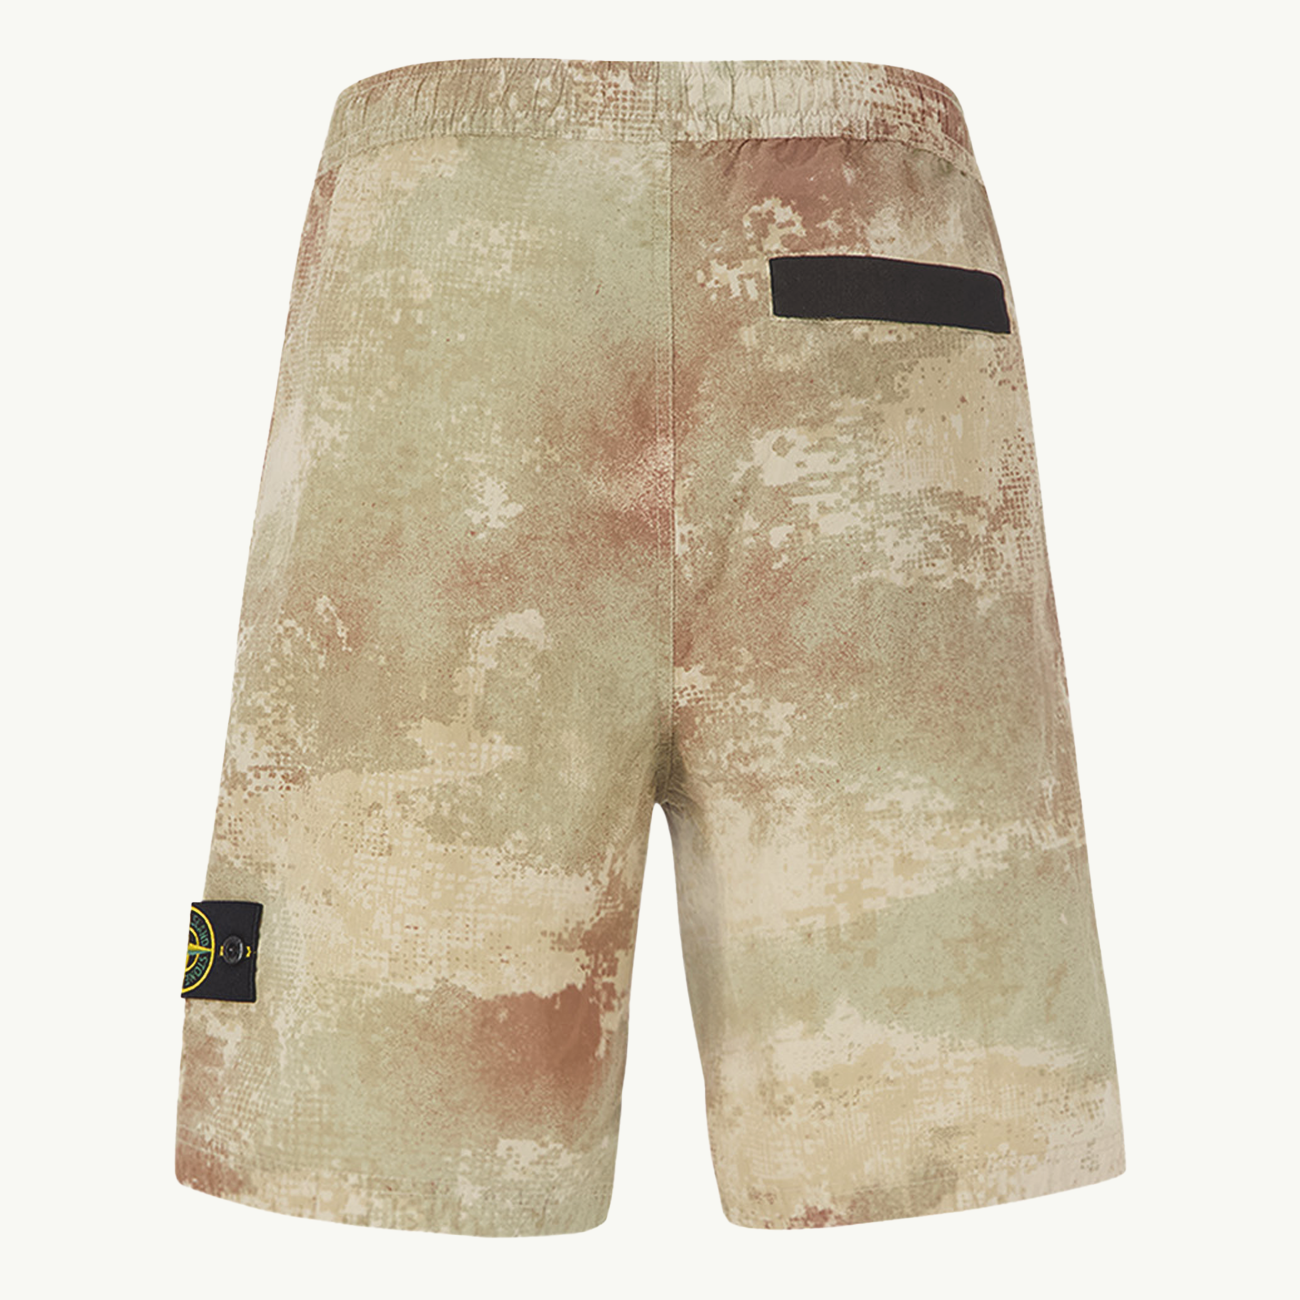 Bermuda Patch Camo Print Shorts - Natural Beige 9180